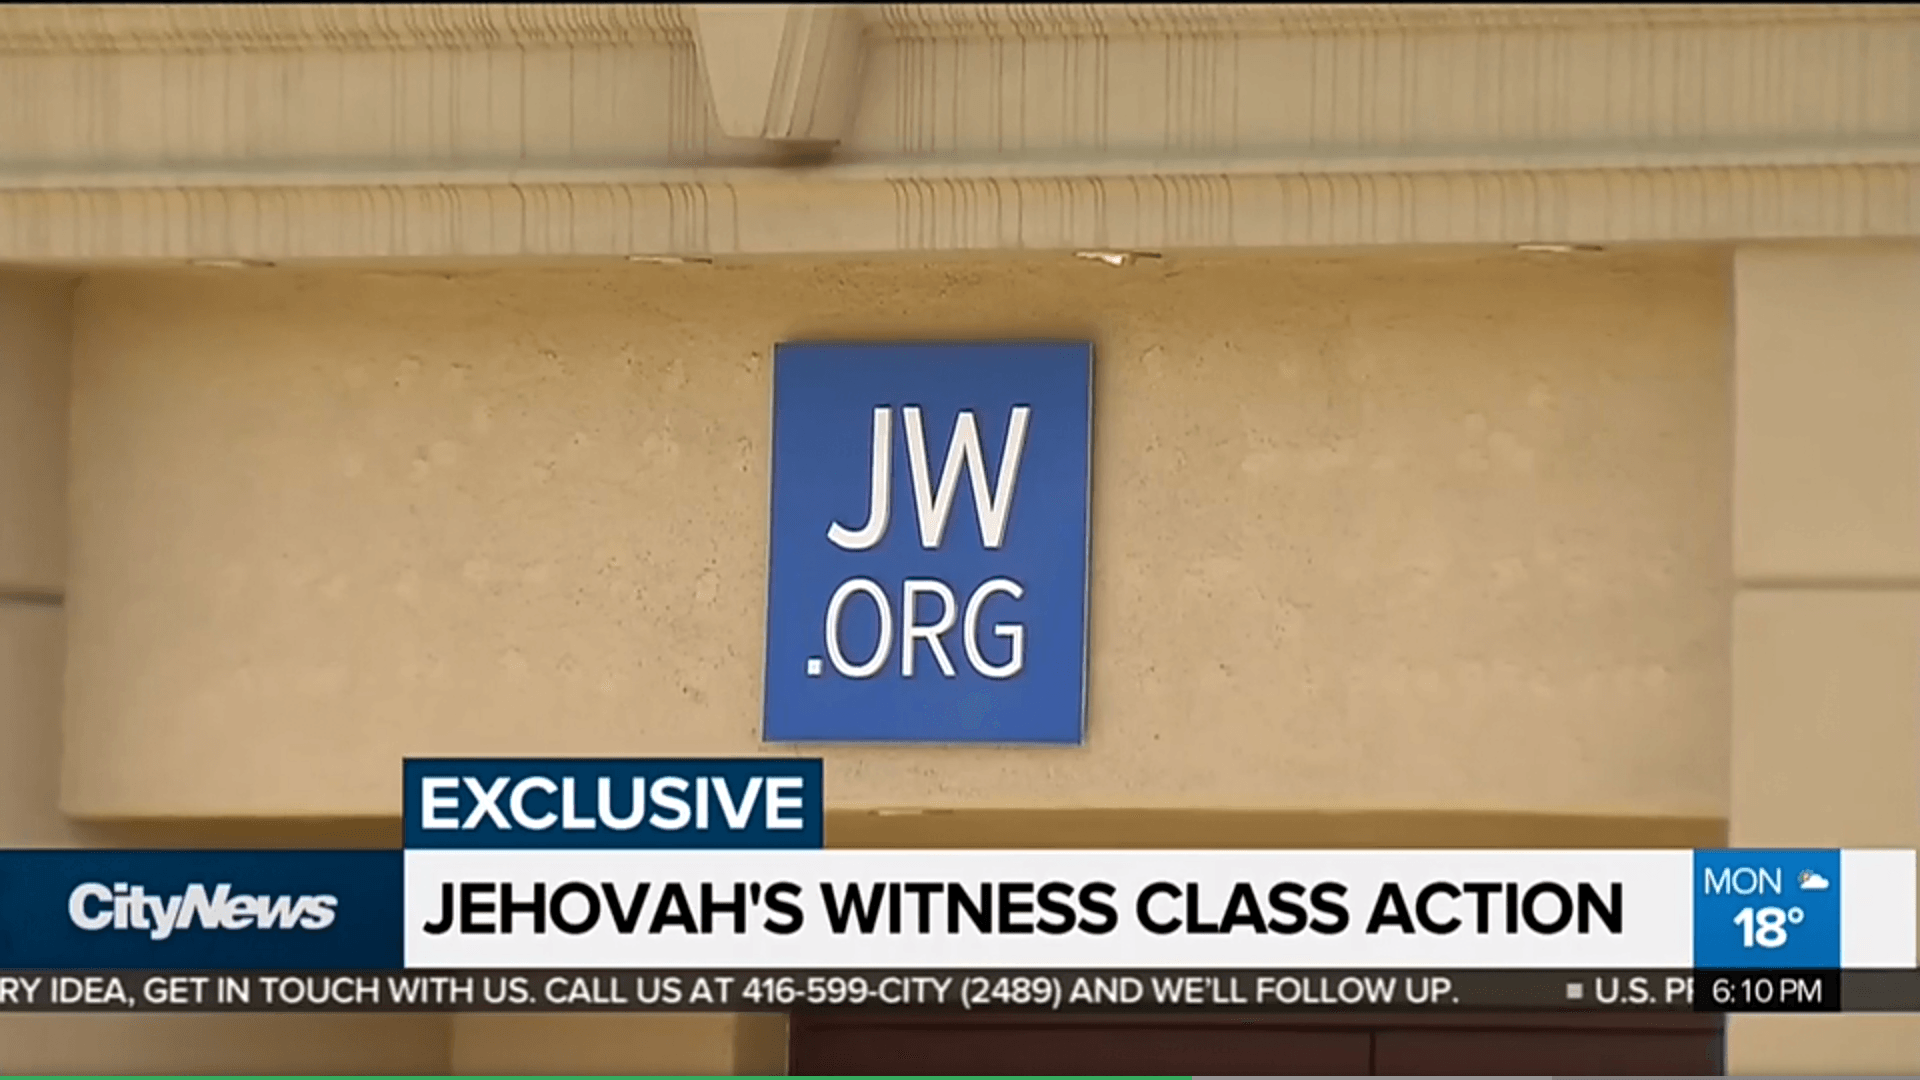 Jehovas Zeugen News Sammelklage 66 Millionen Kindesmissbrauch Pädophile Missbrauchs Wahrheiten jetzt! 66 Millionen Kanadische Dollar-Sammelklage gegen Zeugen Jehovas wegen sexuellem Missbrauch